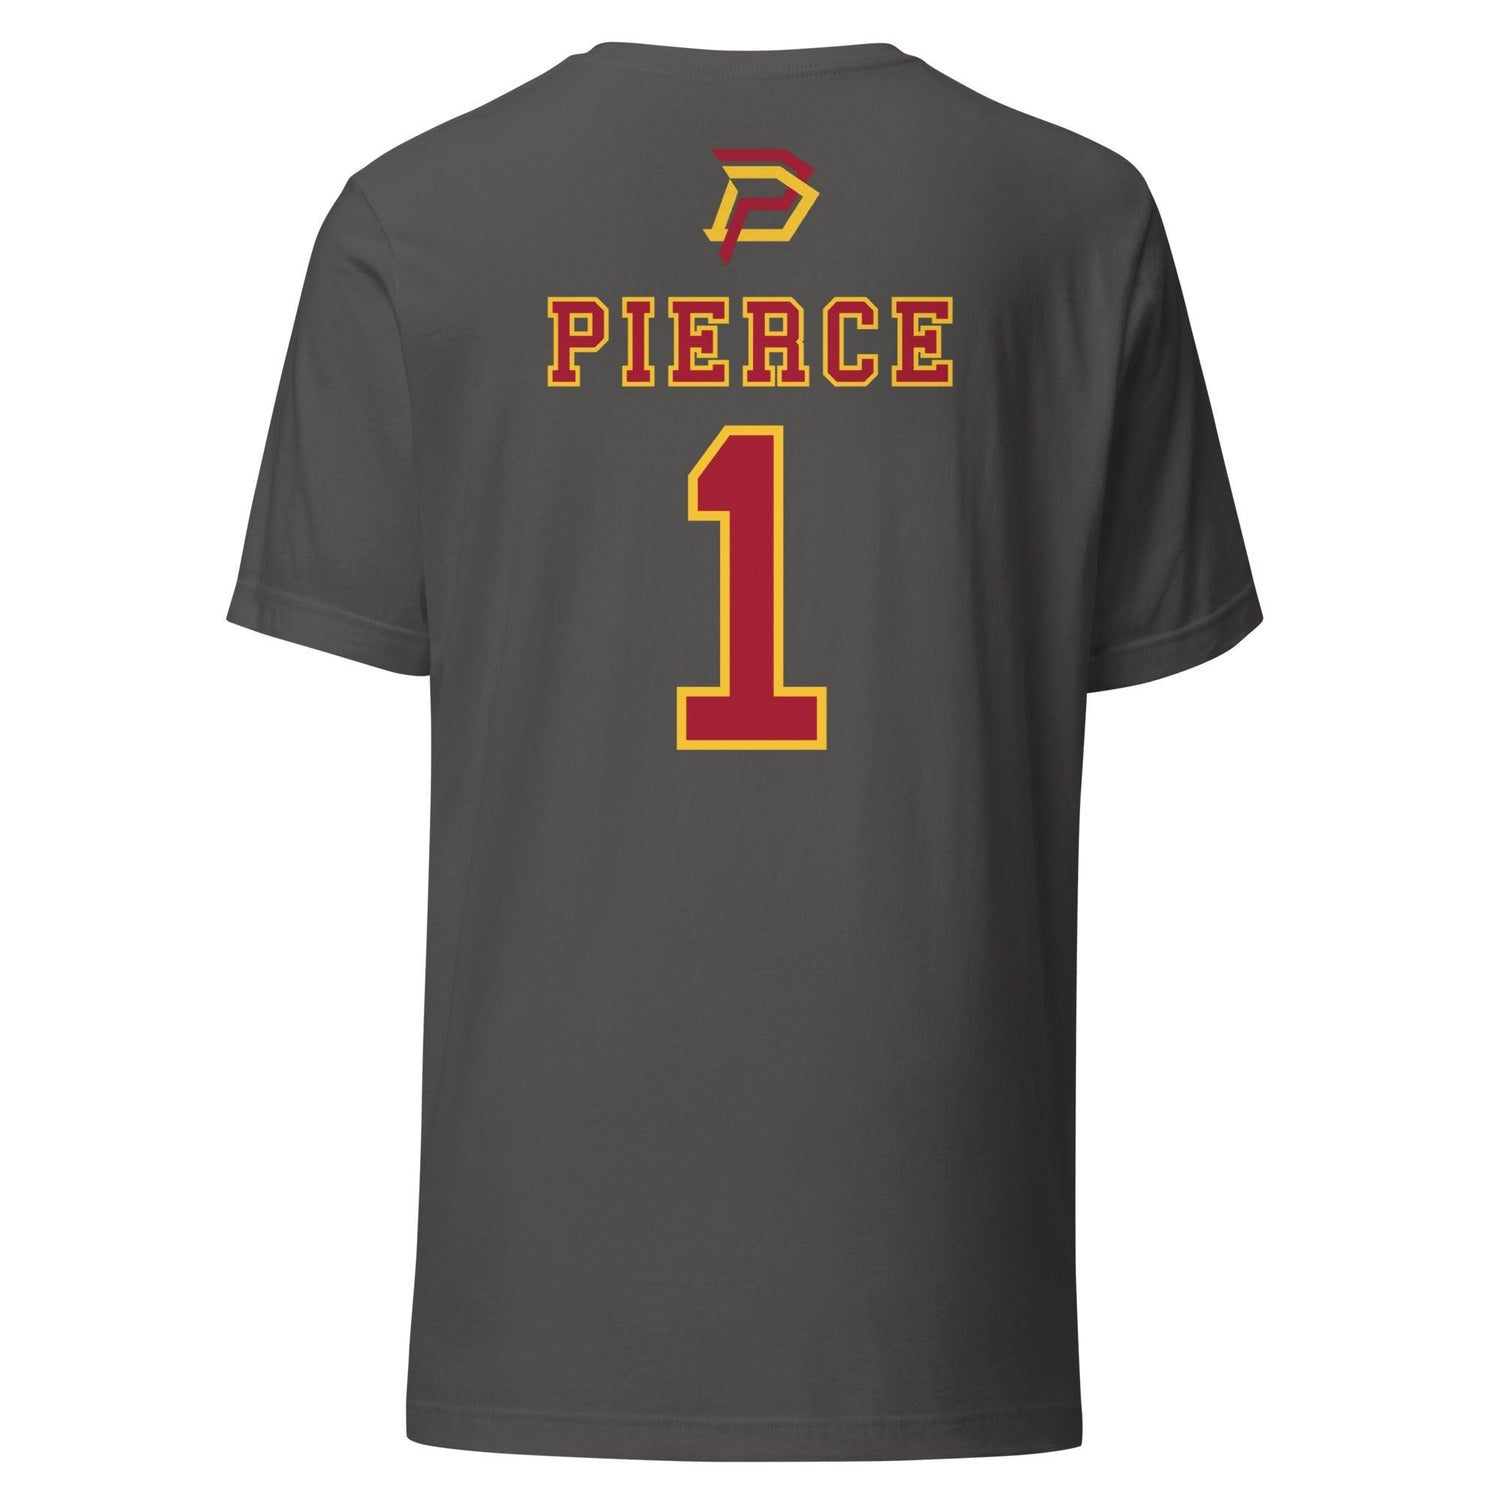 Dwayne Pierce "Jersey" t-shirt - Fan Arch